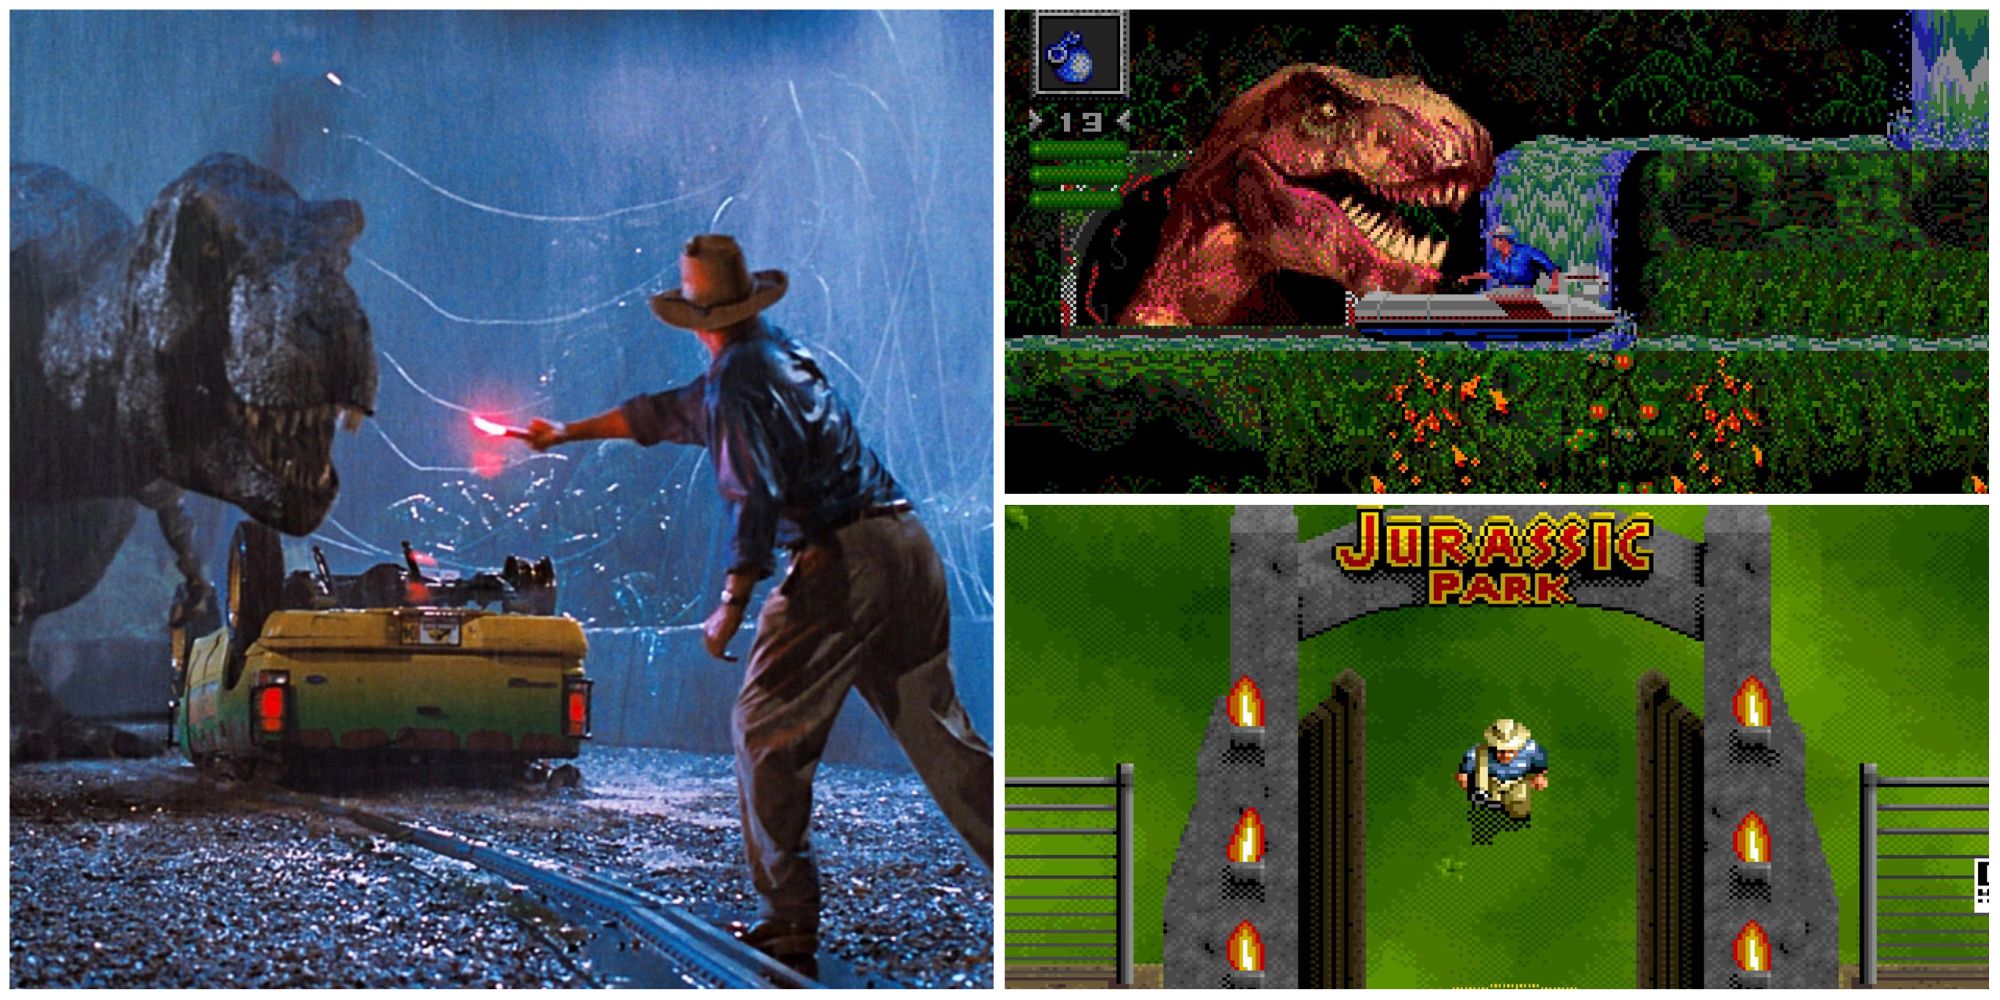 Jurassic Park T-Rex & Dr. Alan Grant, Jurassic Park Sega Genesis Gameplay, Jurassic Park SNES Gameplay